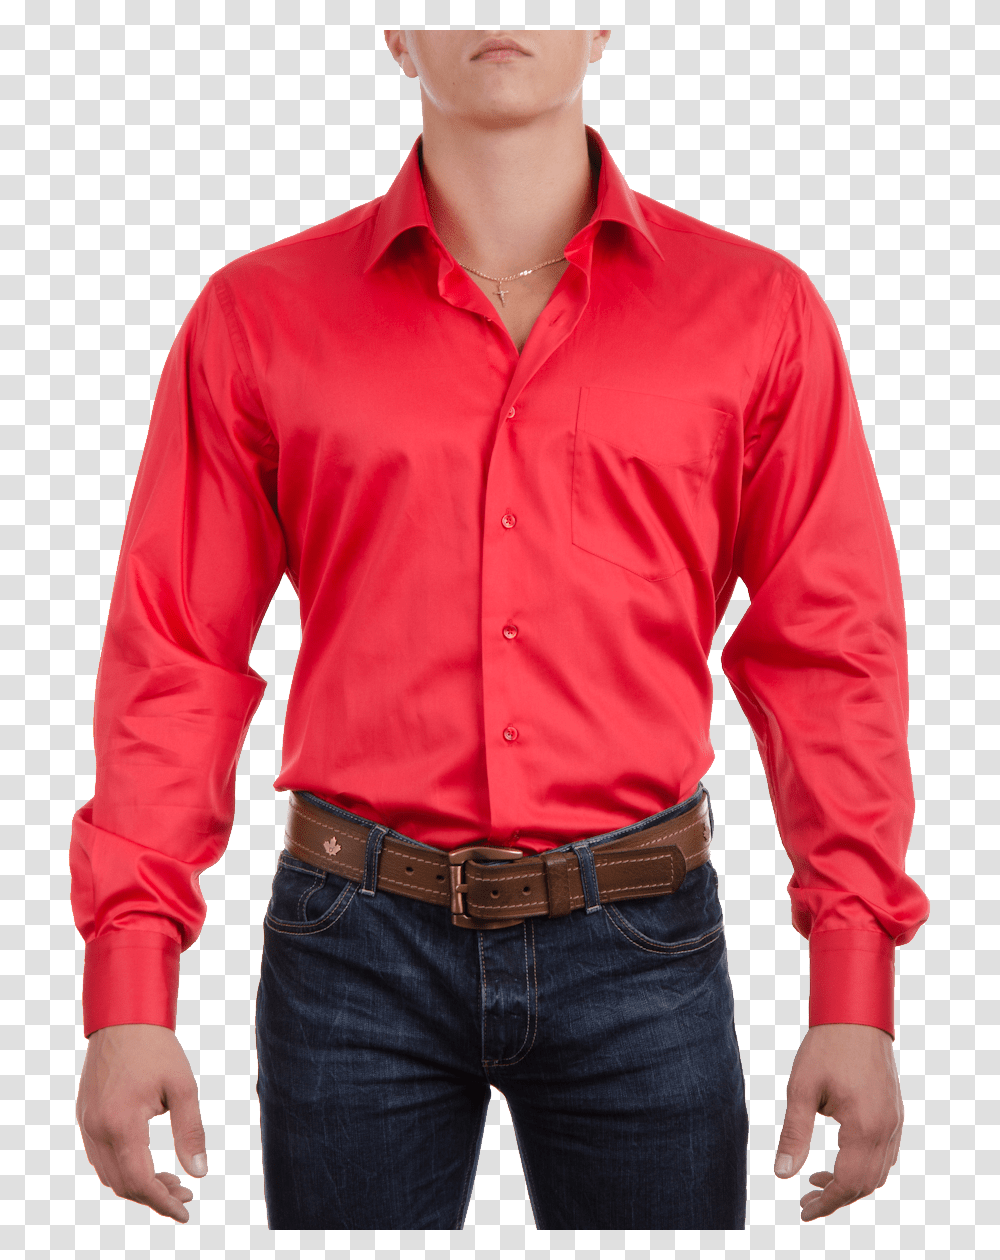 Red Dress Shirt Image Shirt, Apparel, Person, Human Transparent Png